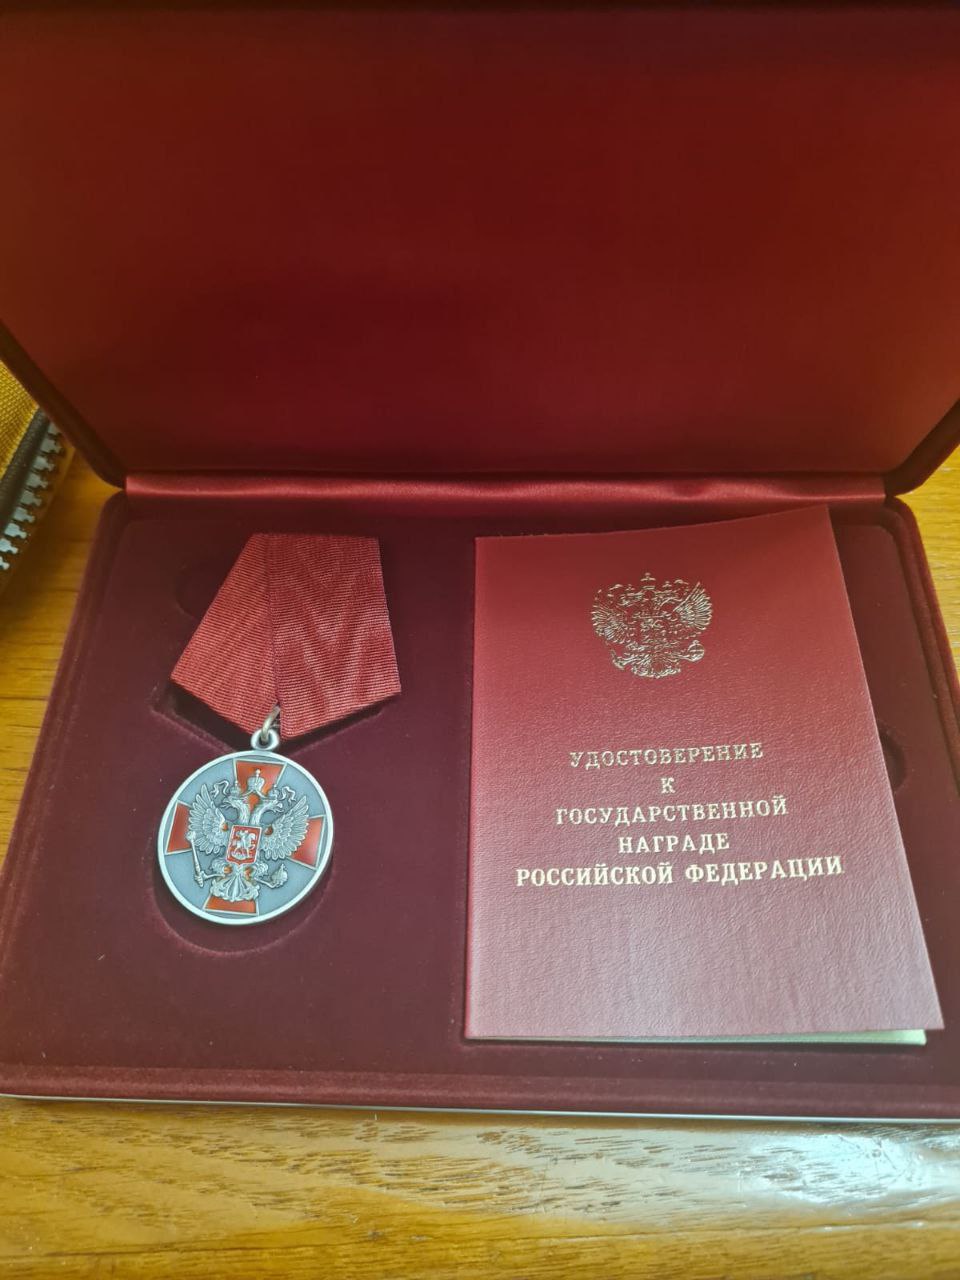 Заместитель по сцовопросам Миасса награждён орденом "За заслуги перед Отечеством"